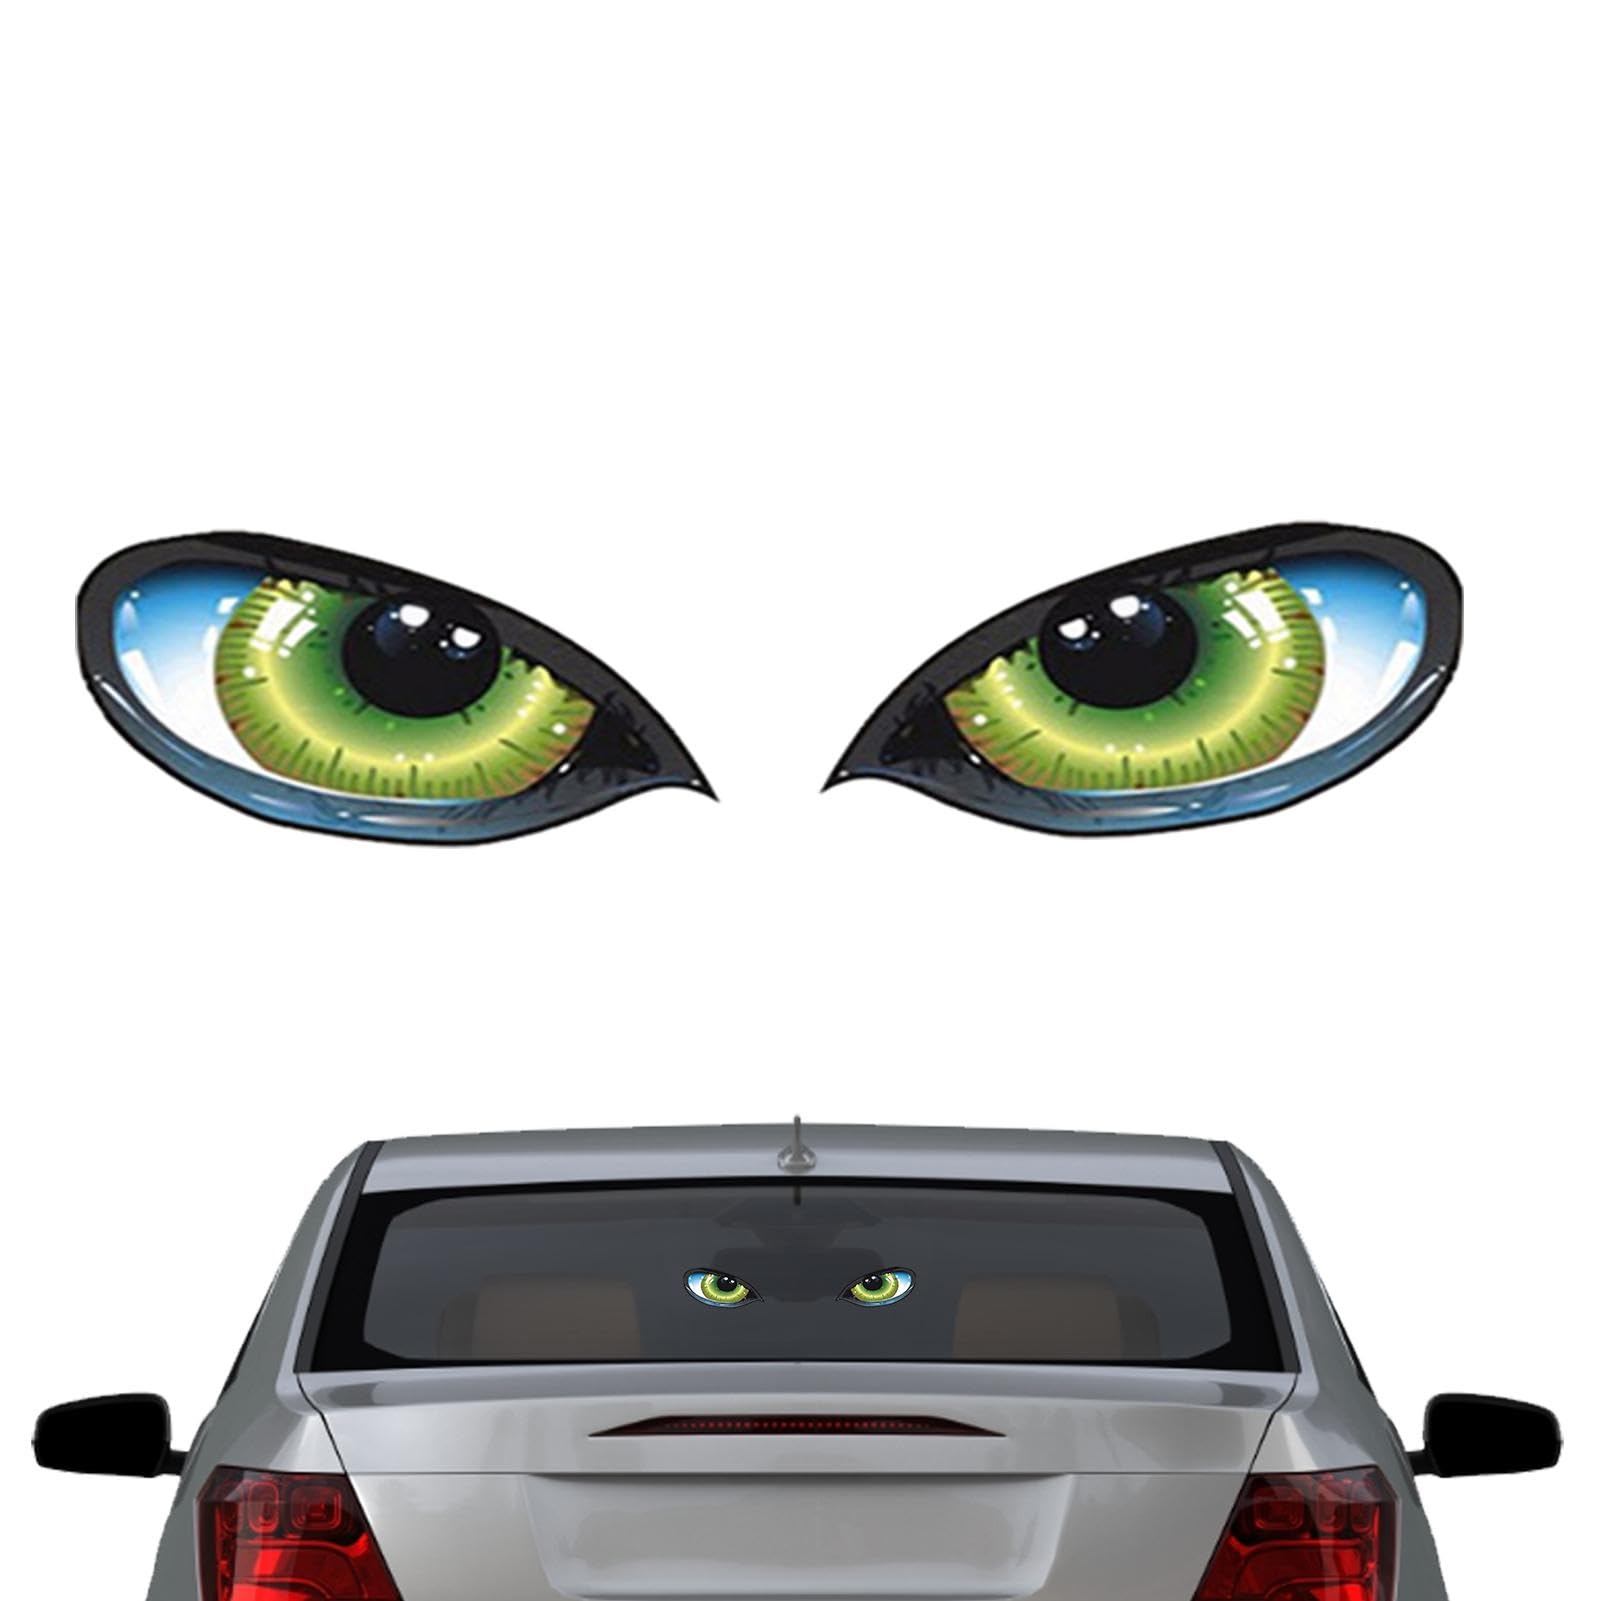 LPORF Auto-Aufkleber mit reflektierenden Augen | Reflektierende 3D-Stereo-Augenaufkleber | Lustiges Autozubehör, langlebige Autodekoration für Zuhause, LKW, Fahrzeug von LPORF